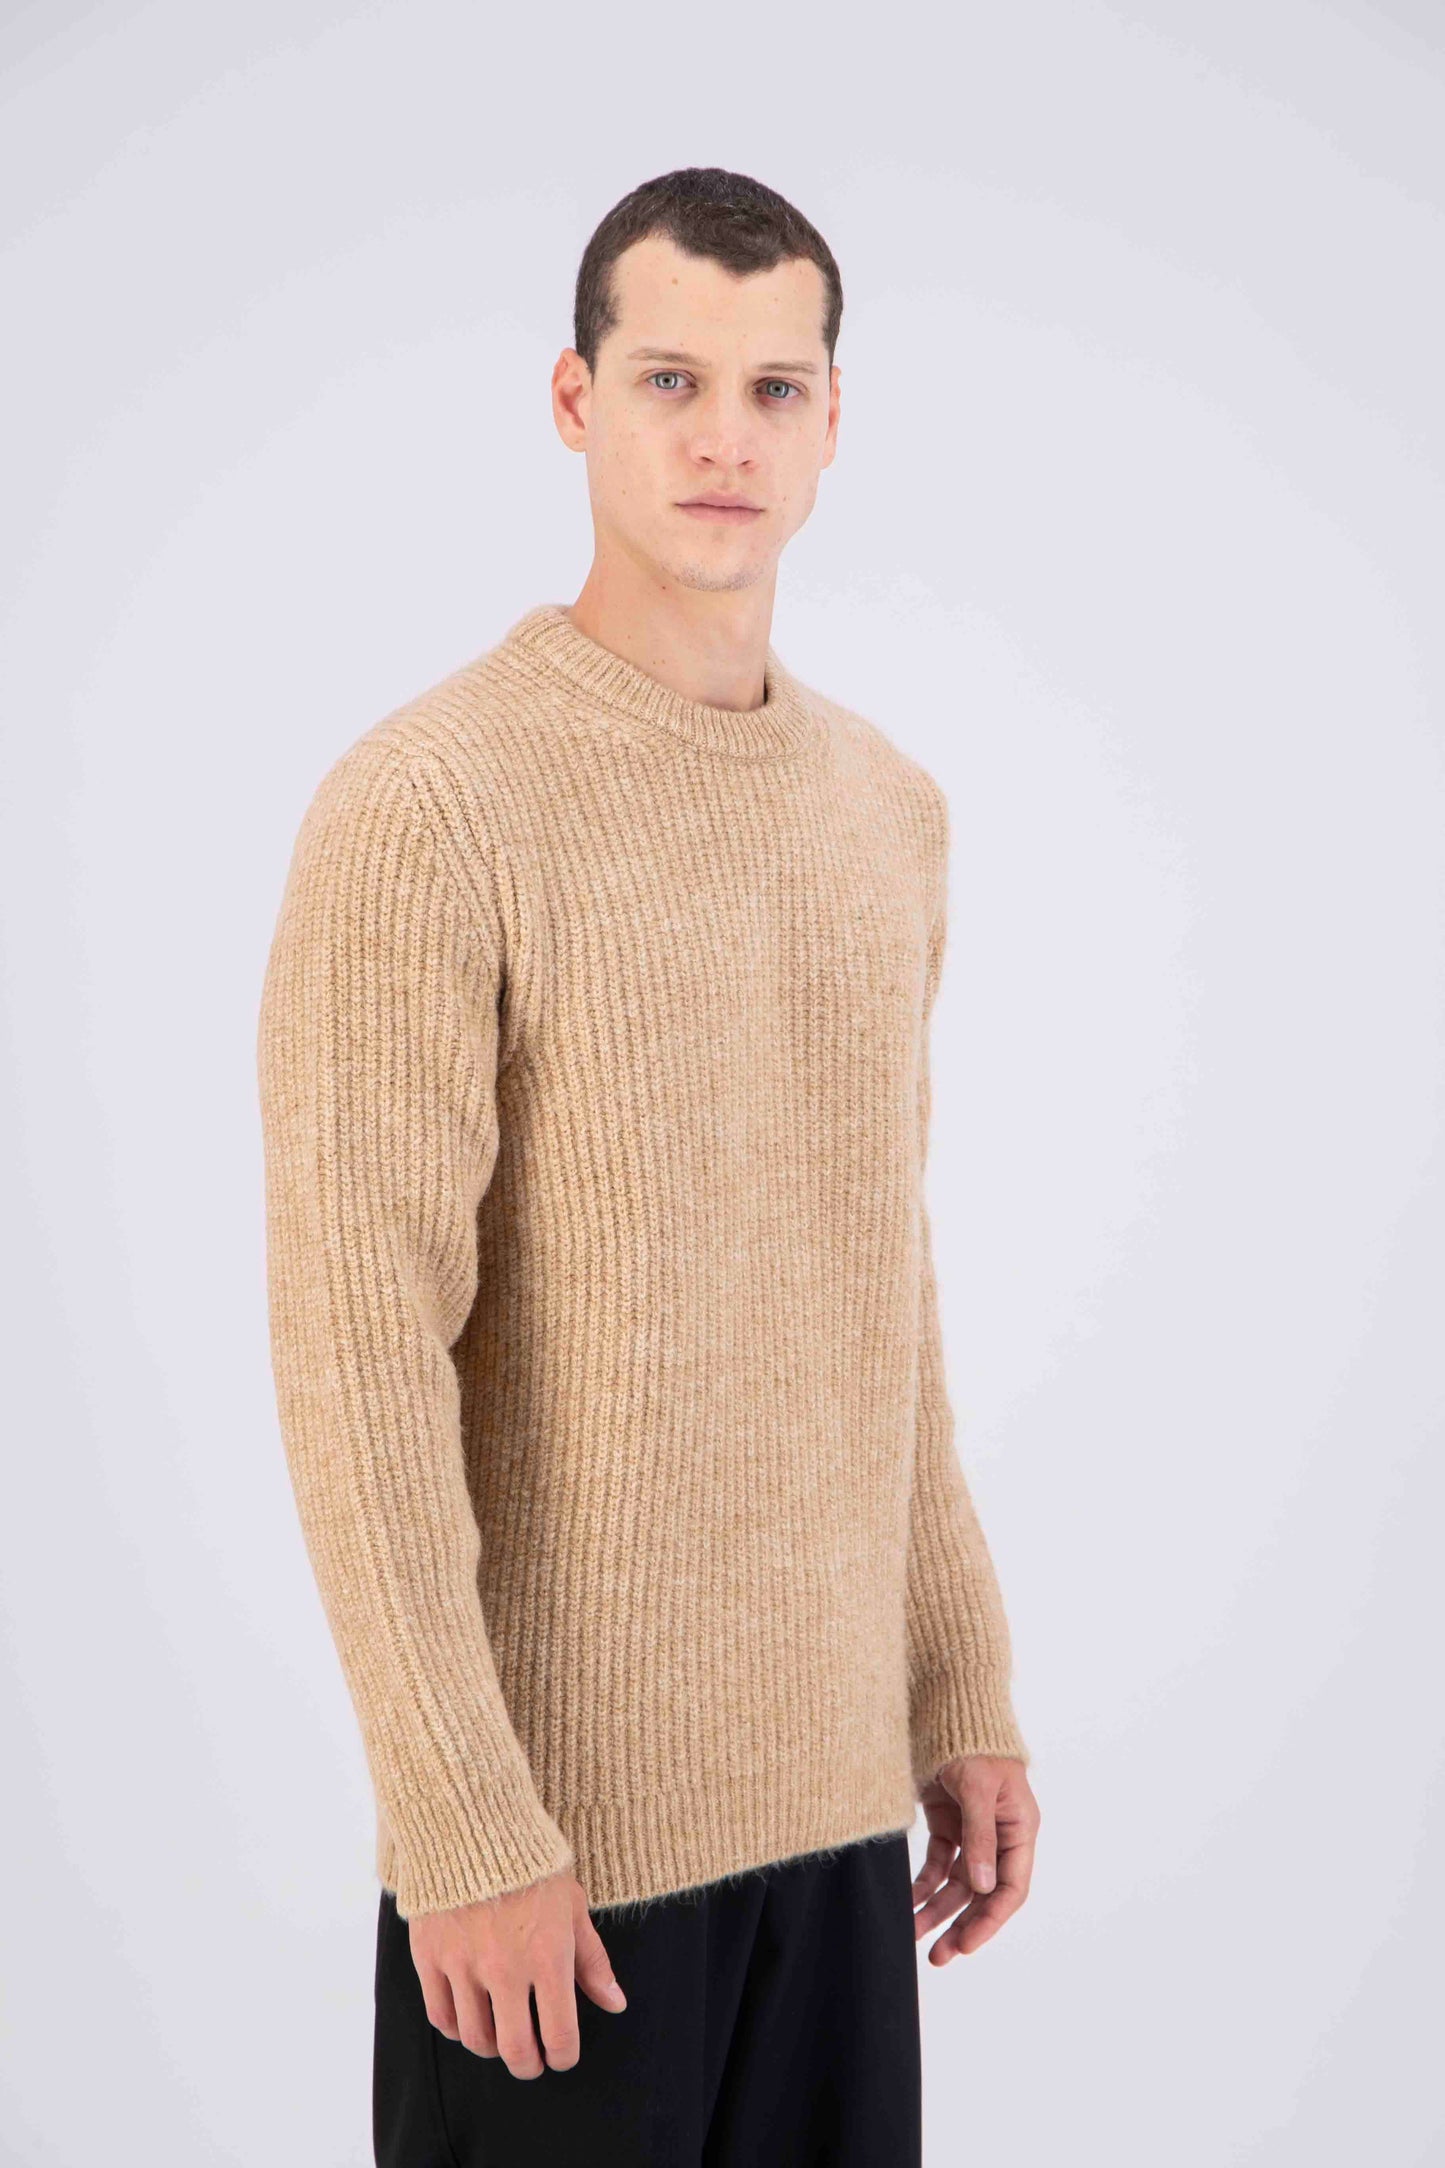 EXQUISITE Sweater